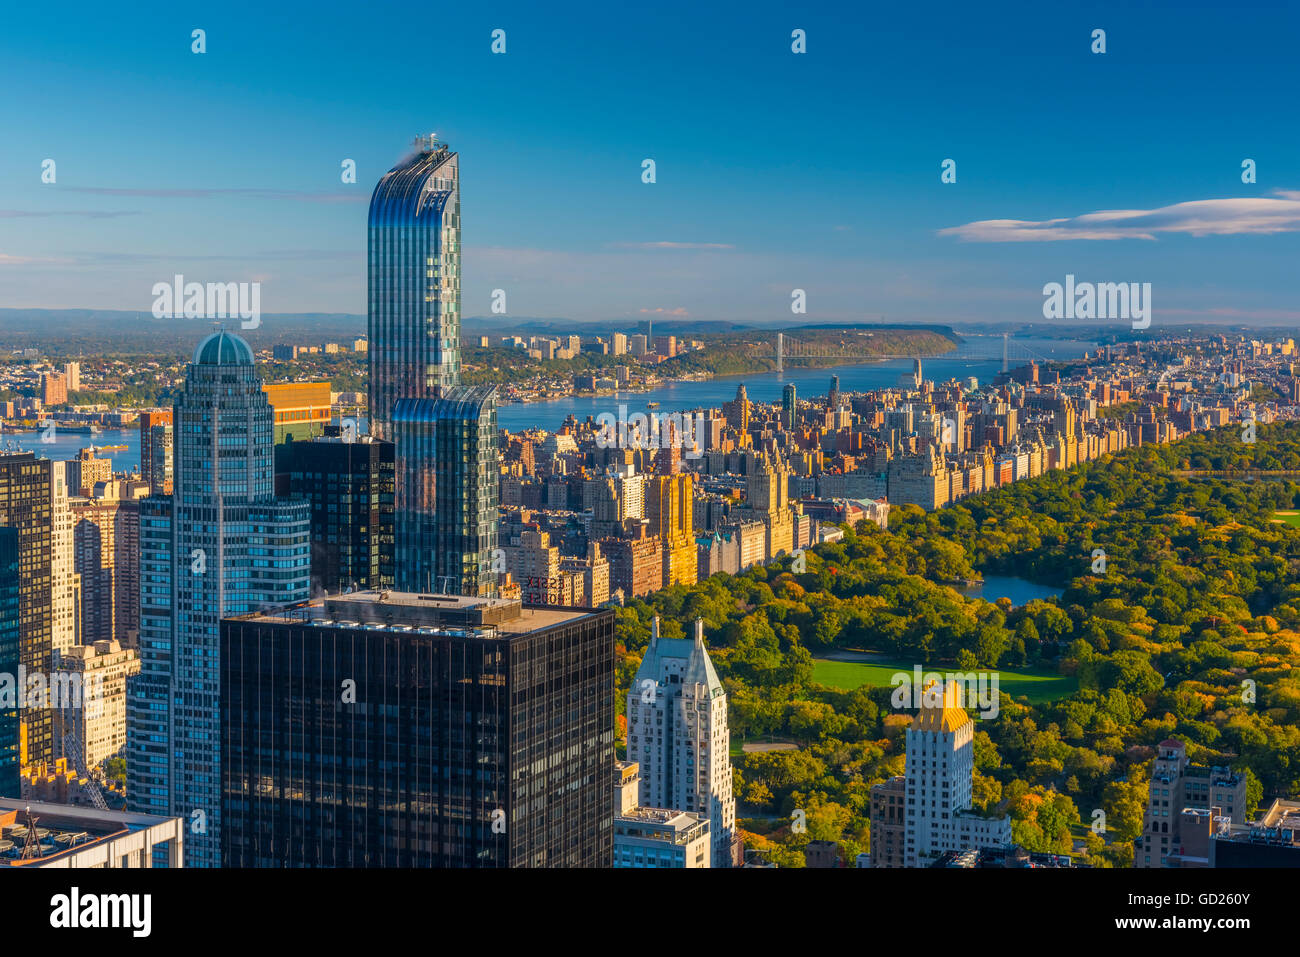 Central Park, l'un57 immeuble sur la gauche, Midtown, Manhattan, New York, États-Unis d'Amérique, Amérique du Nord Banque D'Images